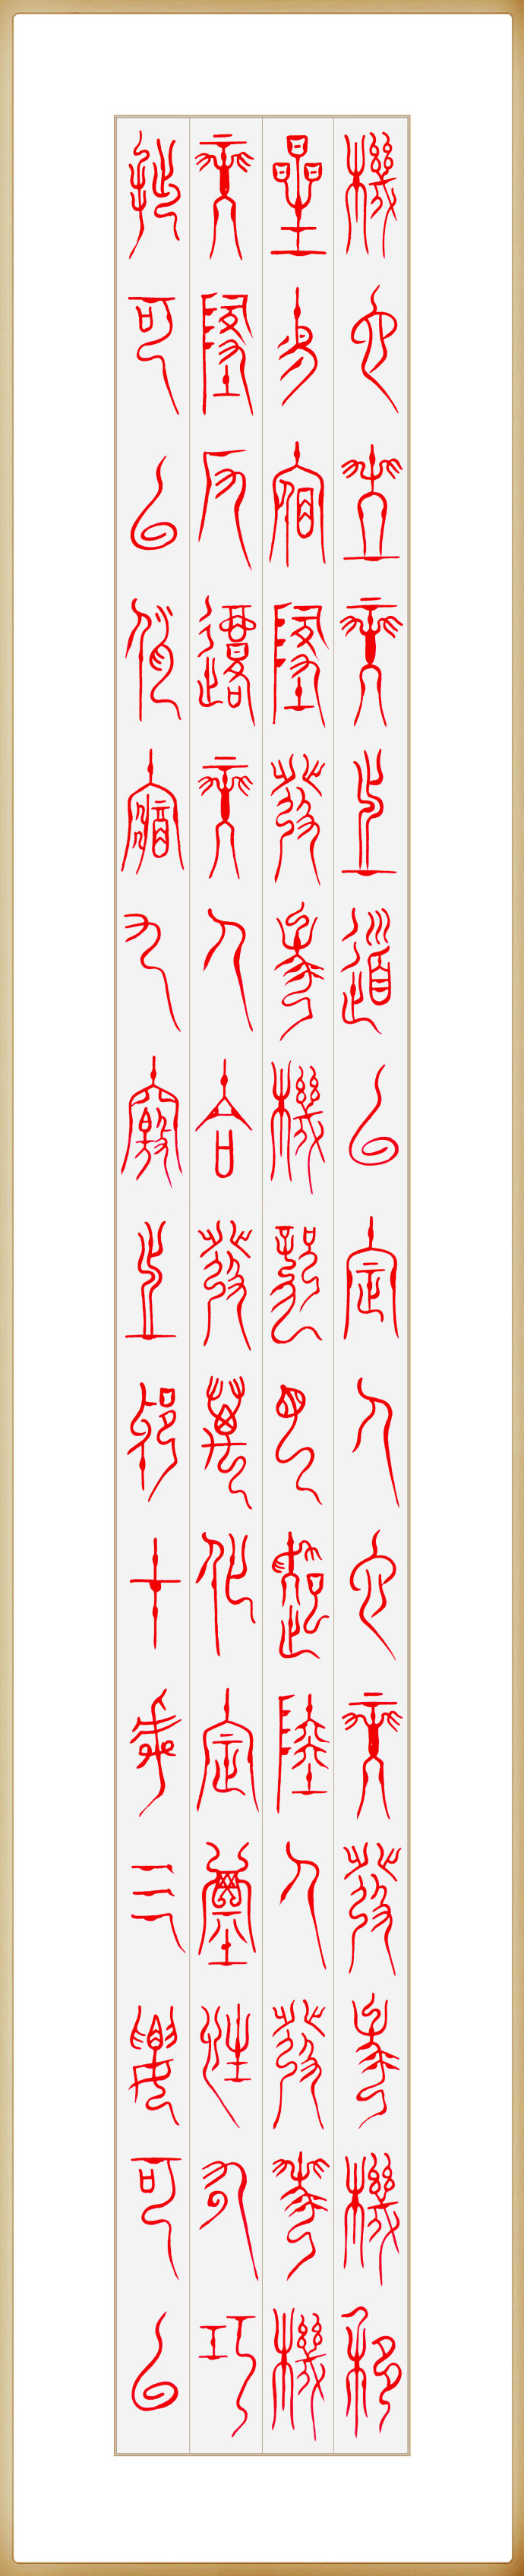 神秘的古文字——篆书阴符经欣赏